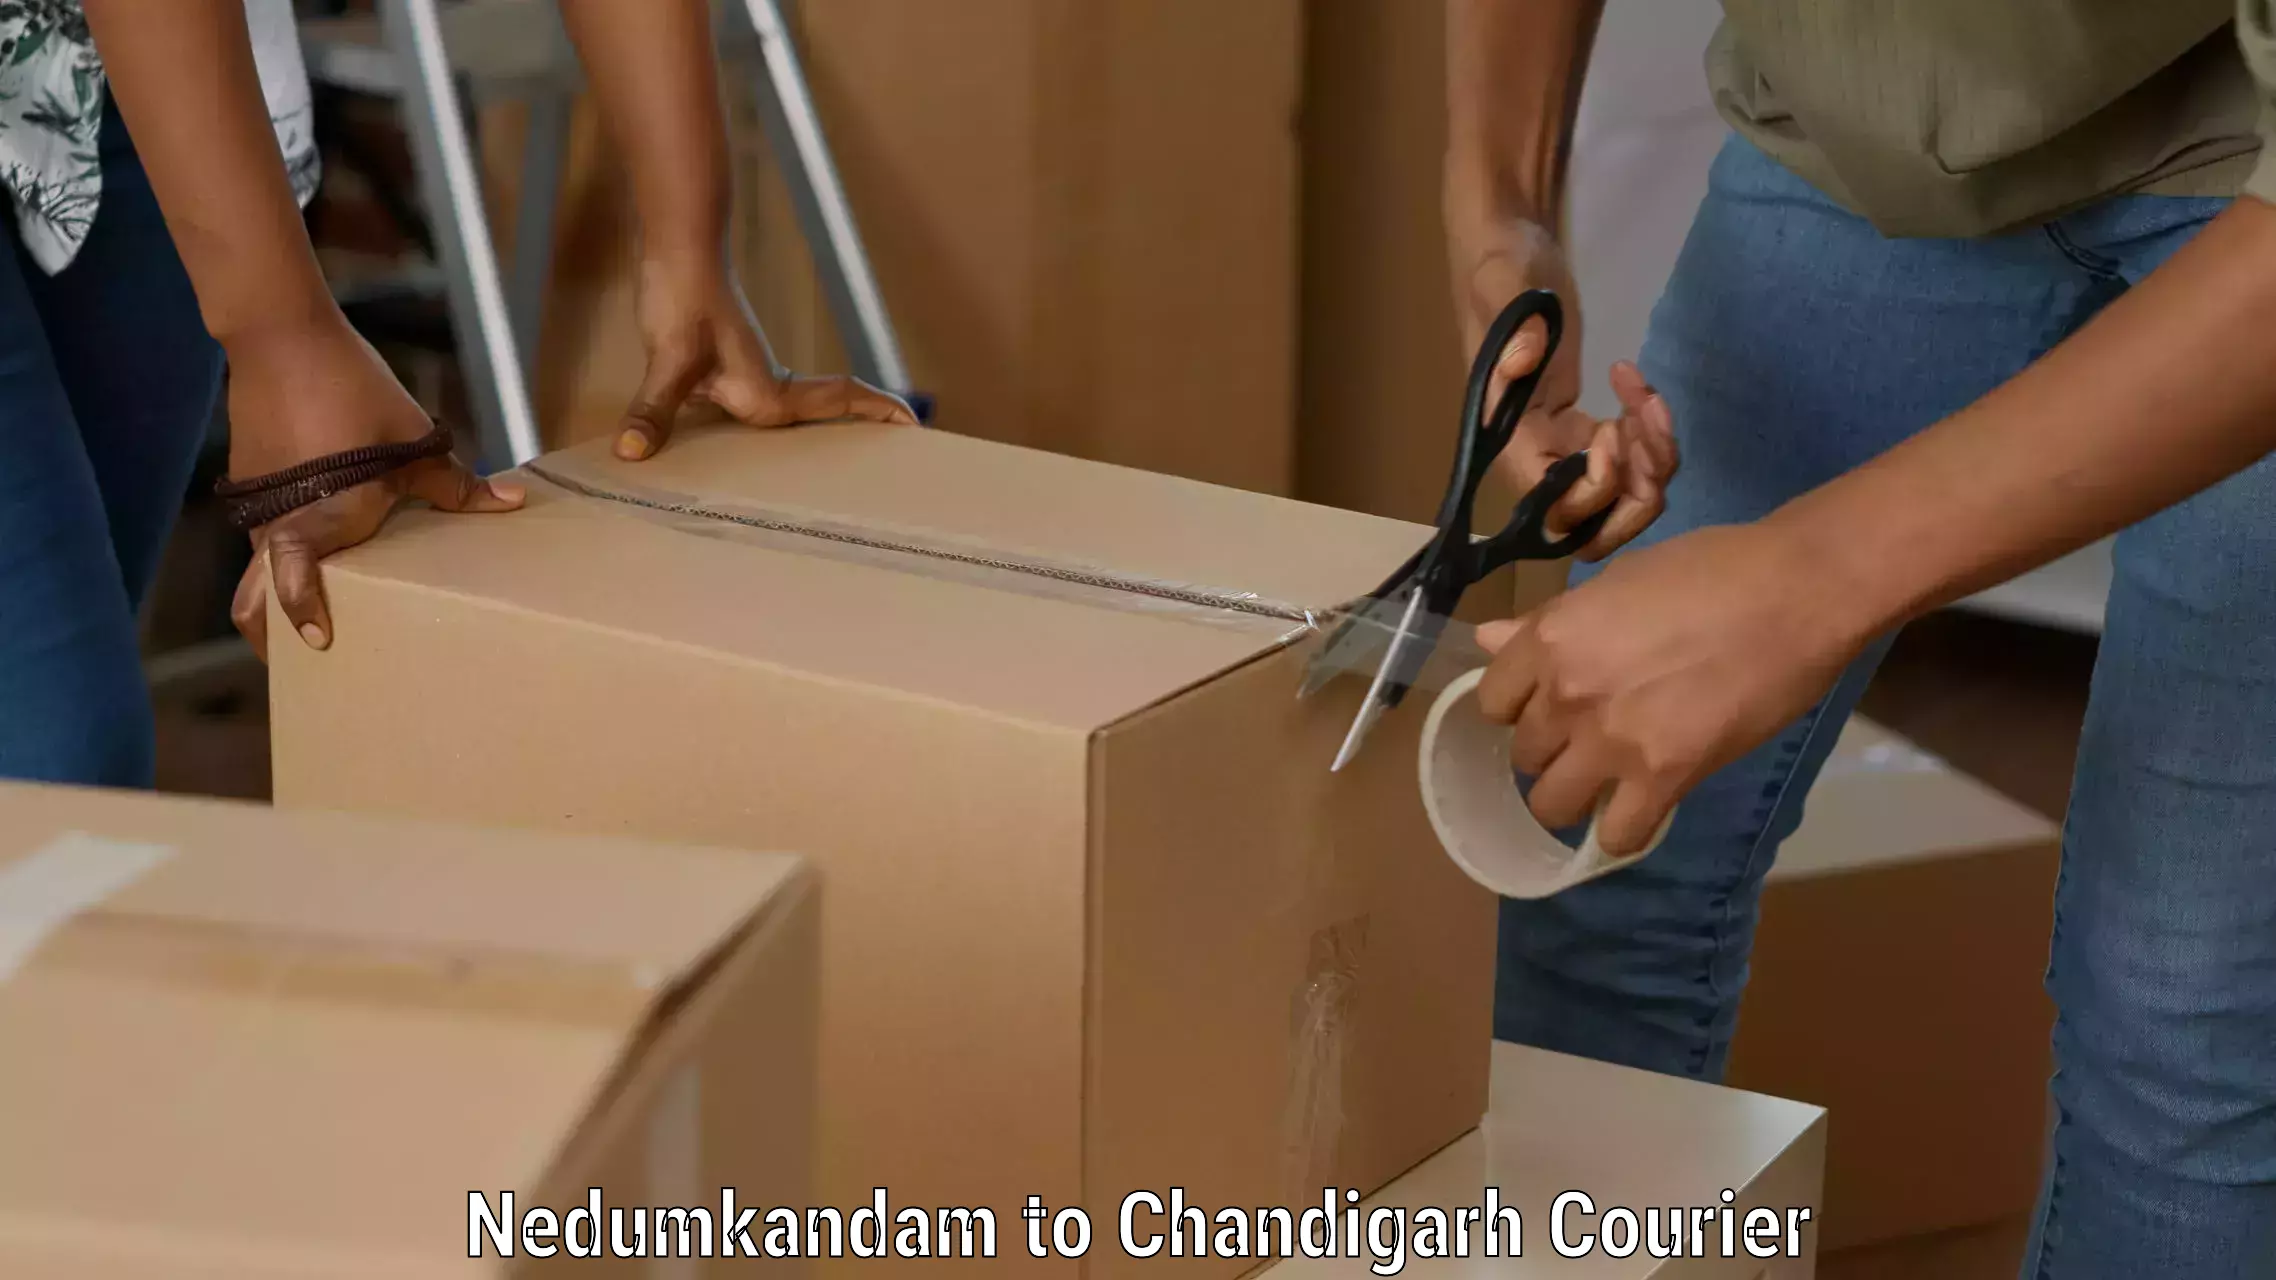 Customizable delivery plans Nedumkandam to Chandigarh